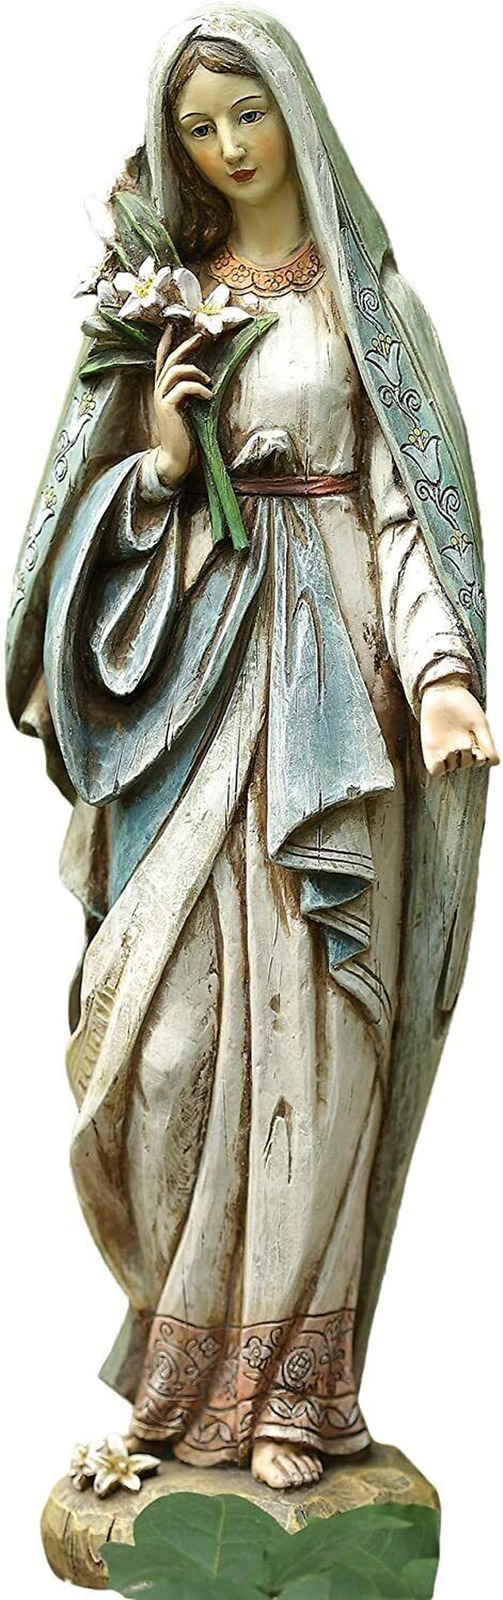 Blessed Virgin Mary Mother Madonna Lilies Figurine Indoor Outdoor Garden Statue